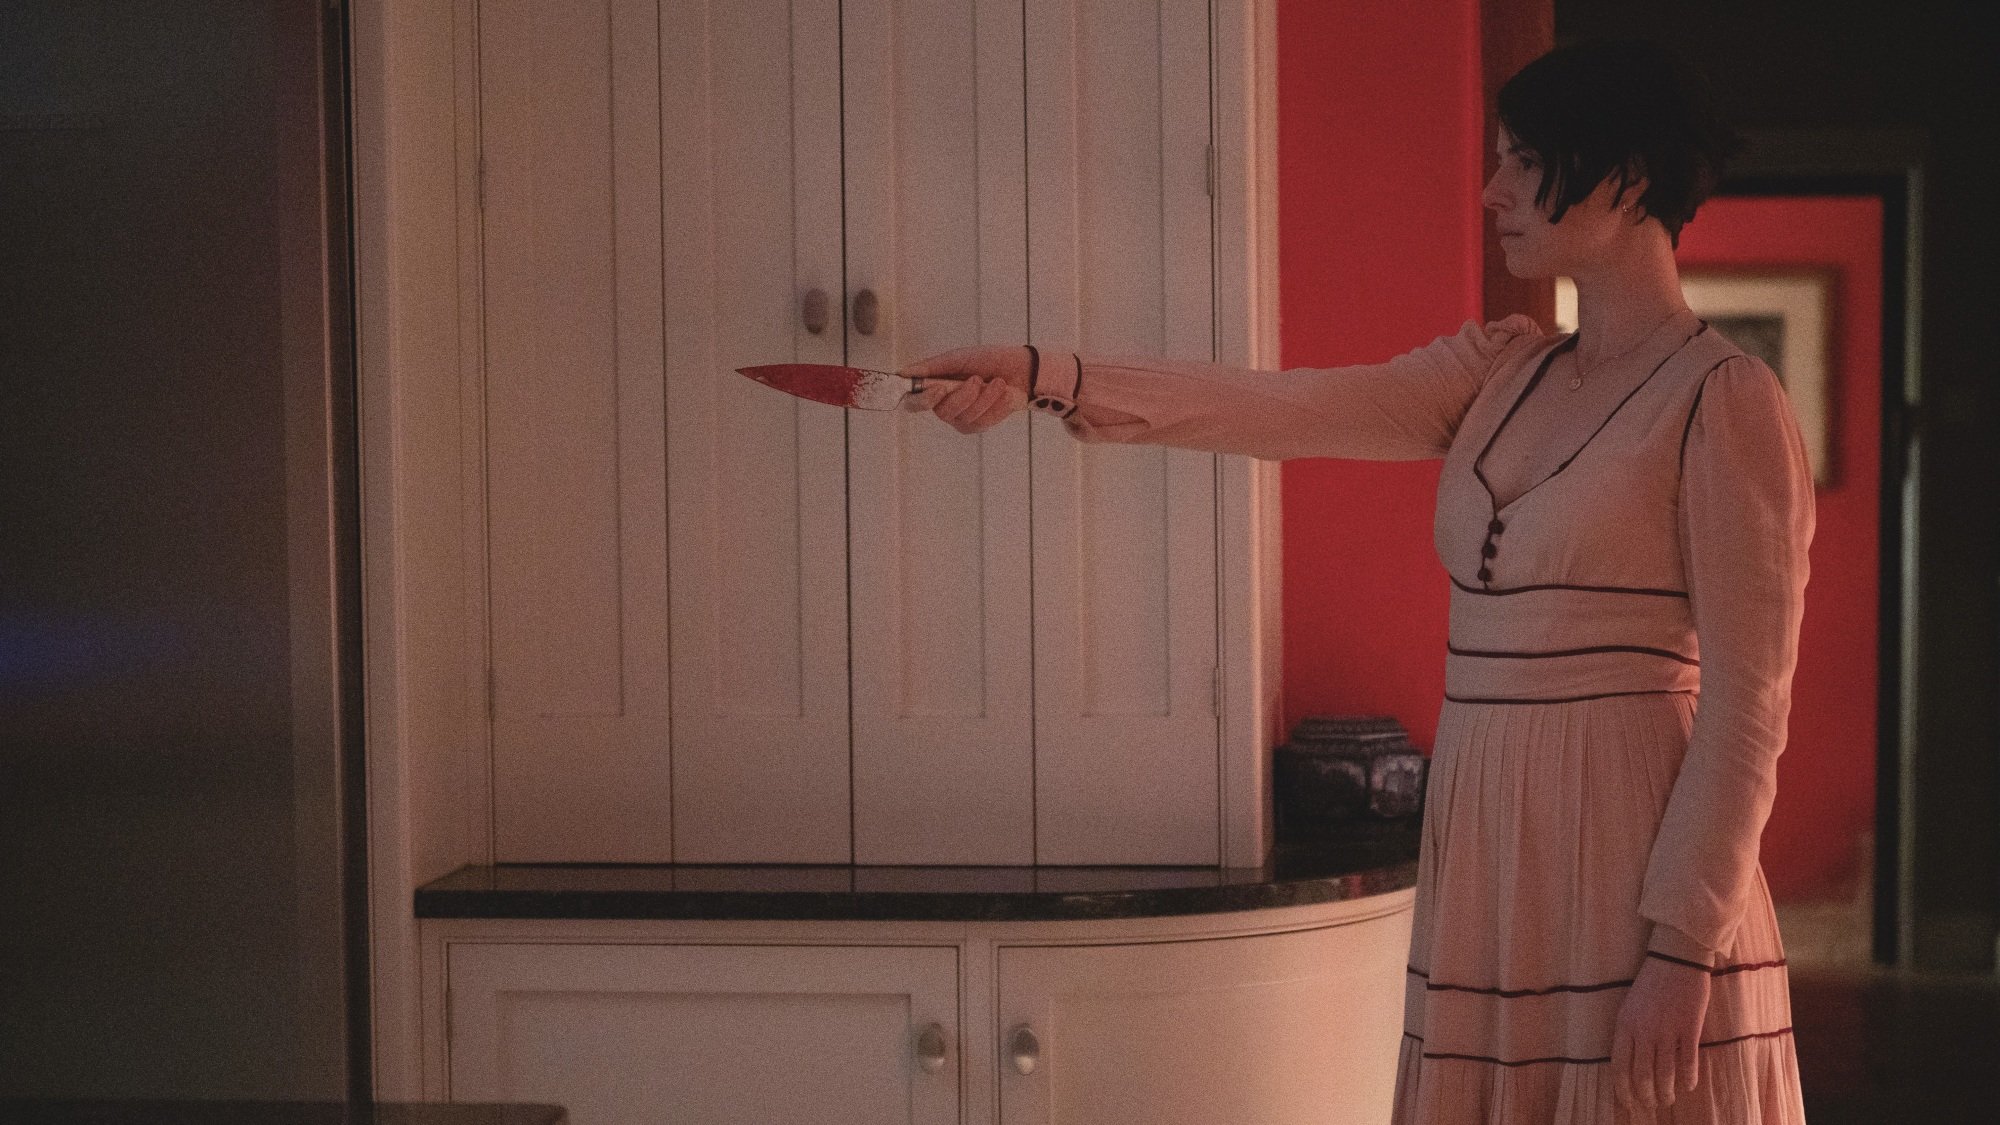 Une femme vêtue d’une robe rose pointe un couteau ensanglanté sur un intrus inconnu.